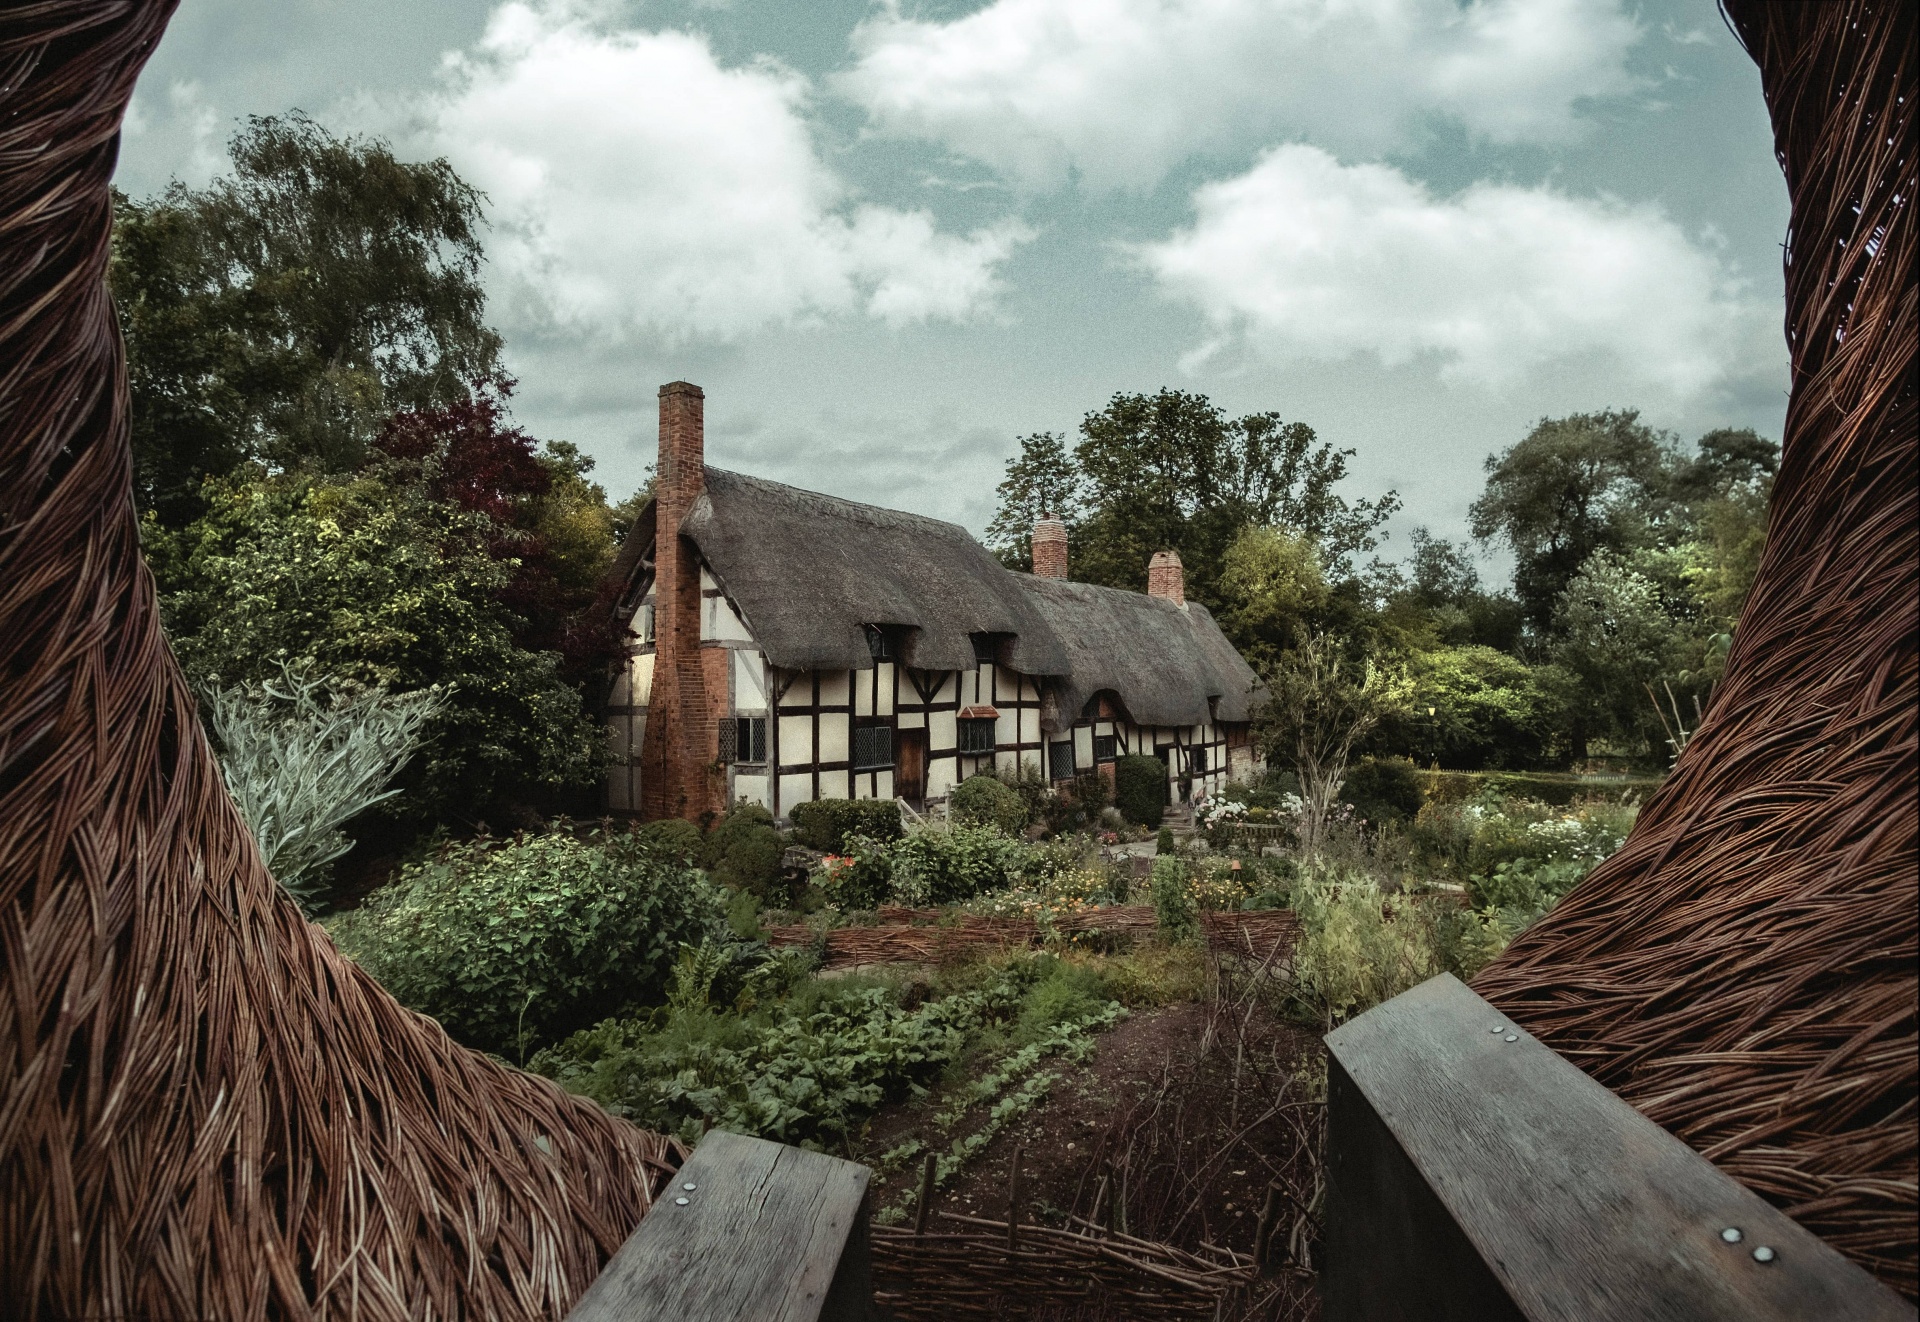 Tudor house and garden